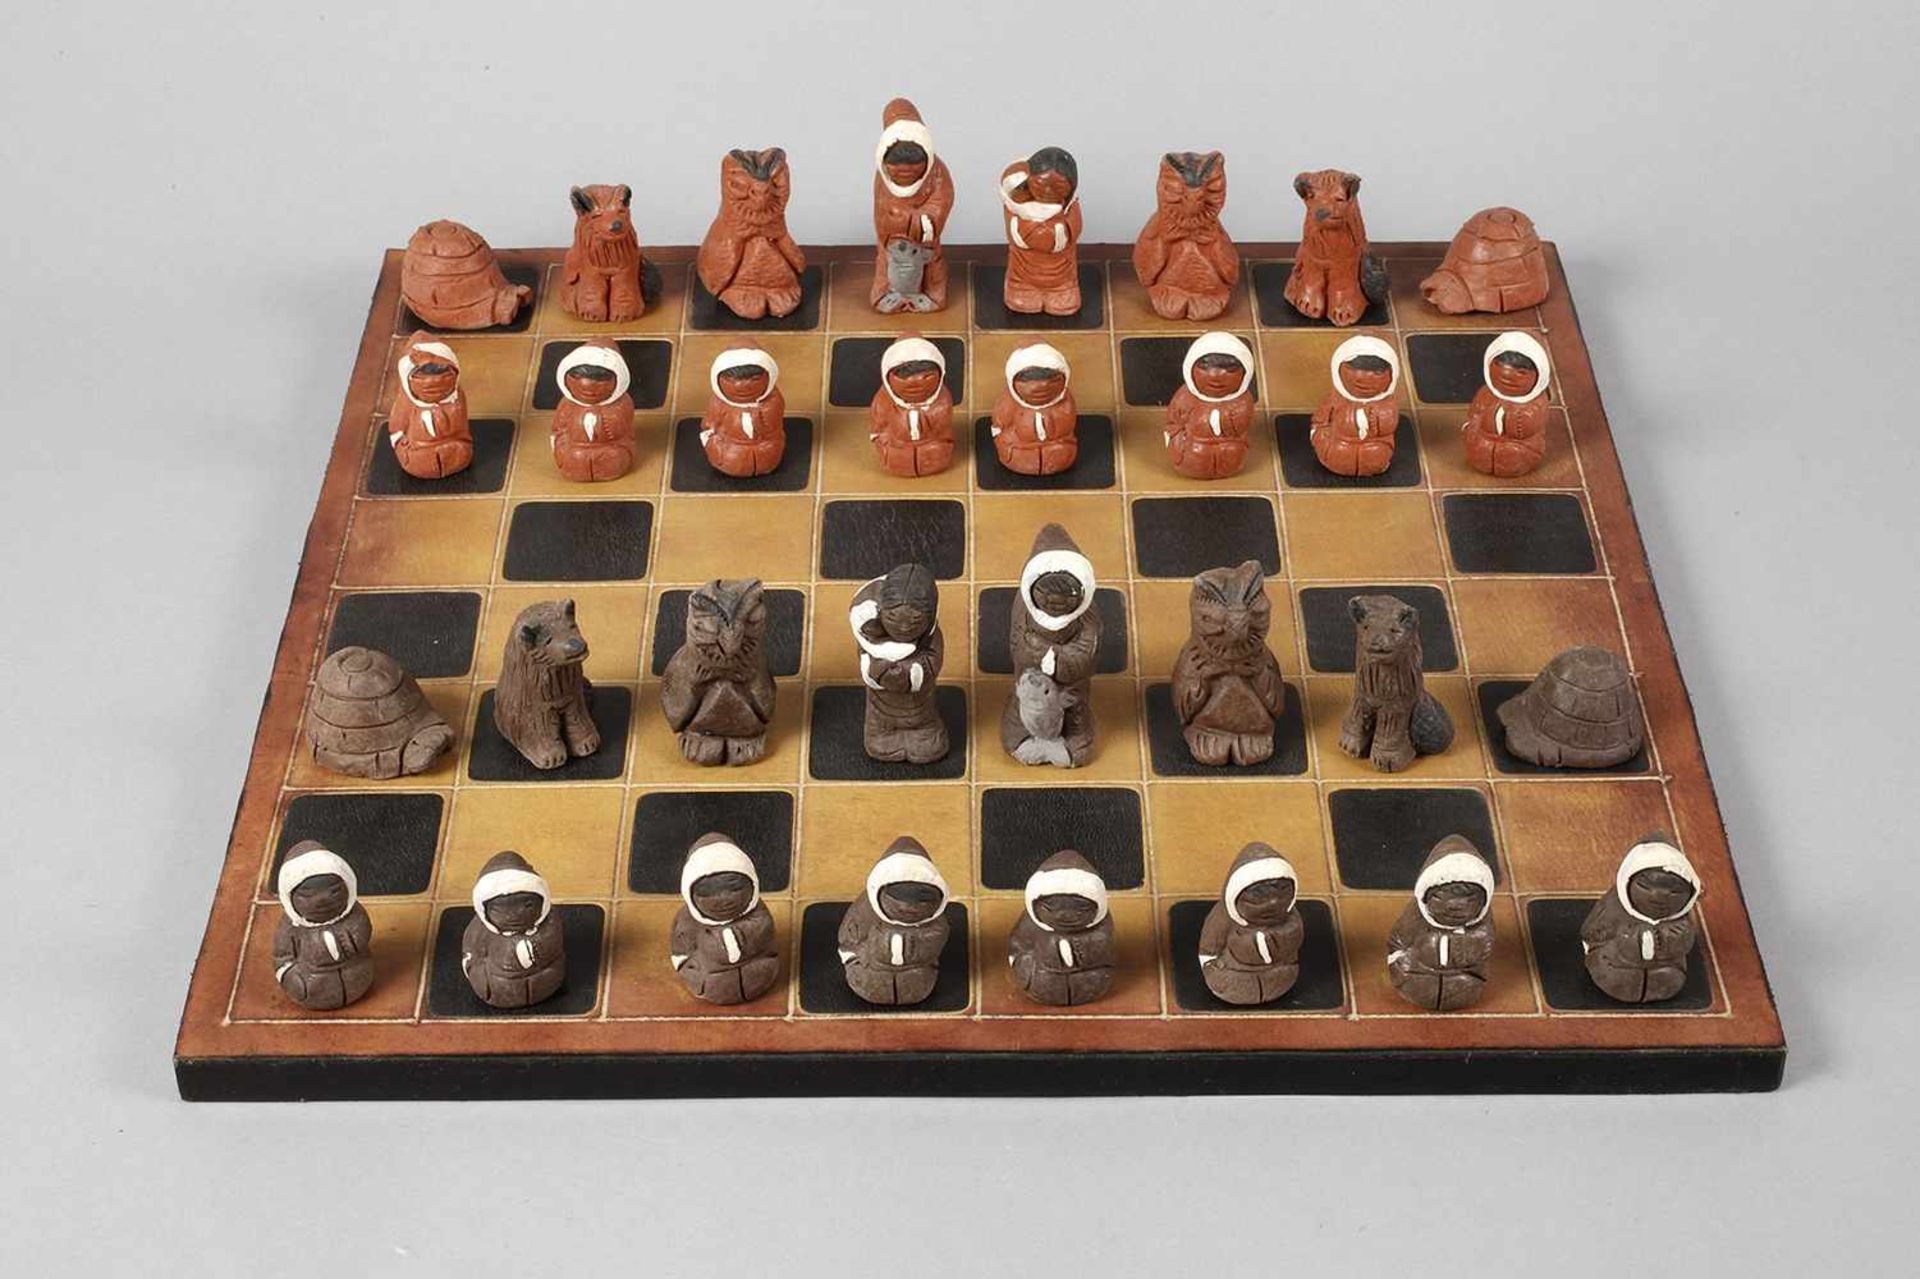 Schachspiel KeramikKanada 20. Jh., alle gemarkt CISA Canada, teils farbig gefasster, heller Scherben